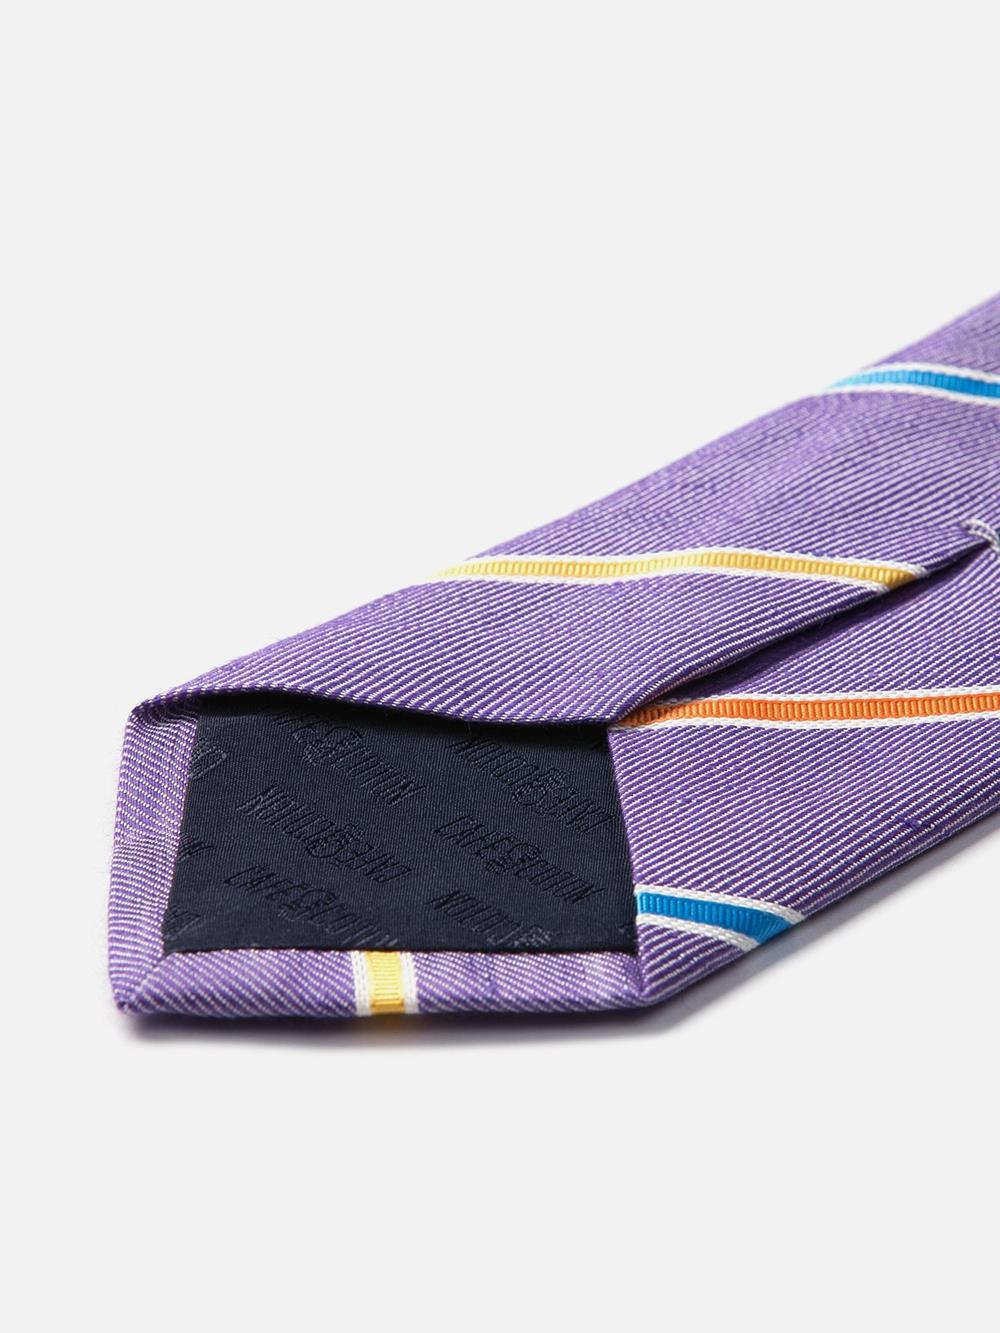 Cravate en soie et lin parme à rayures multicolores